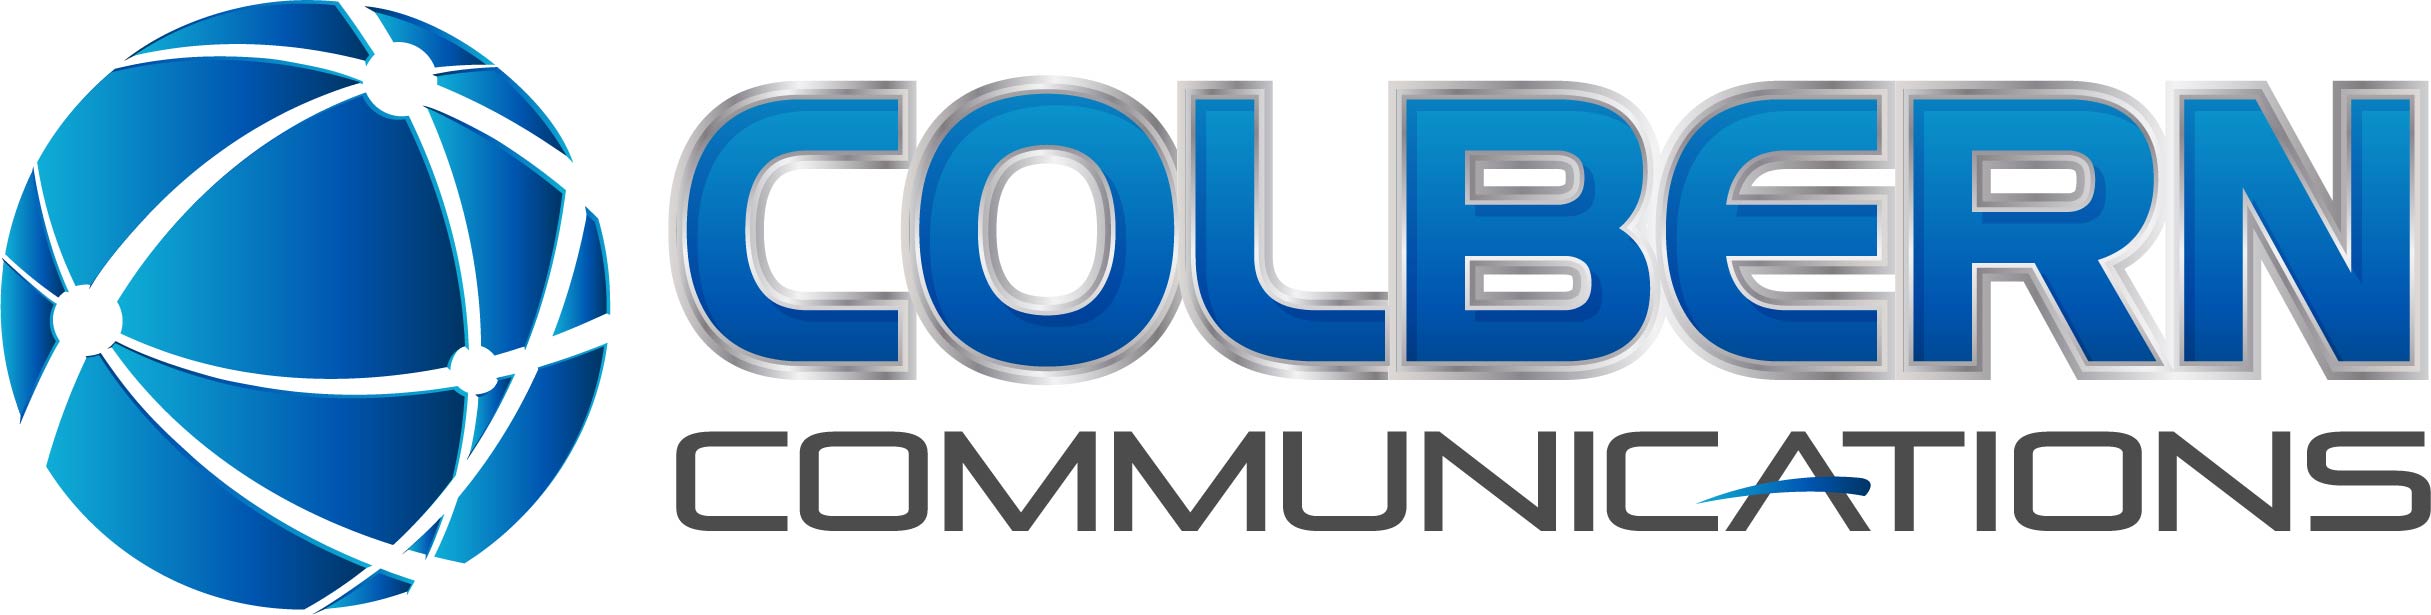 Colbern Communications, Inc. Logo